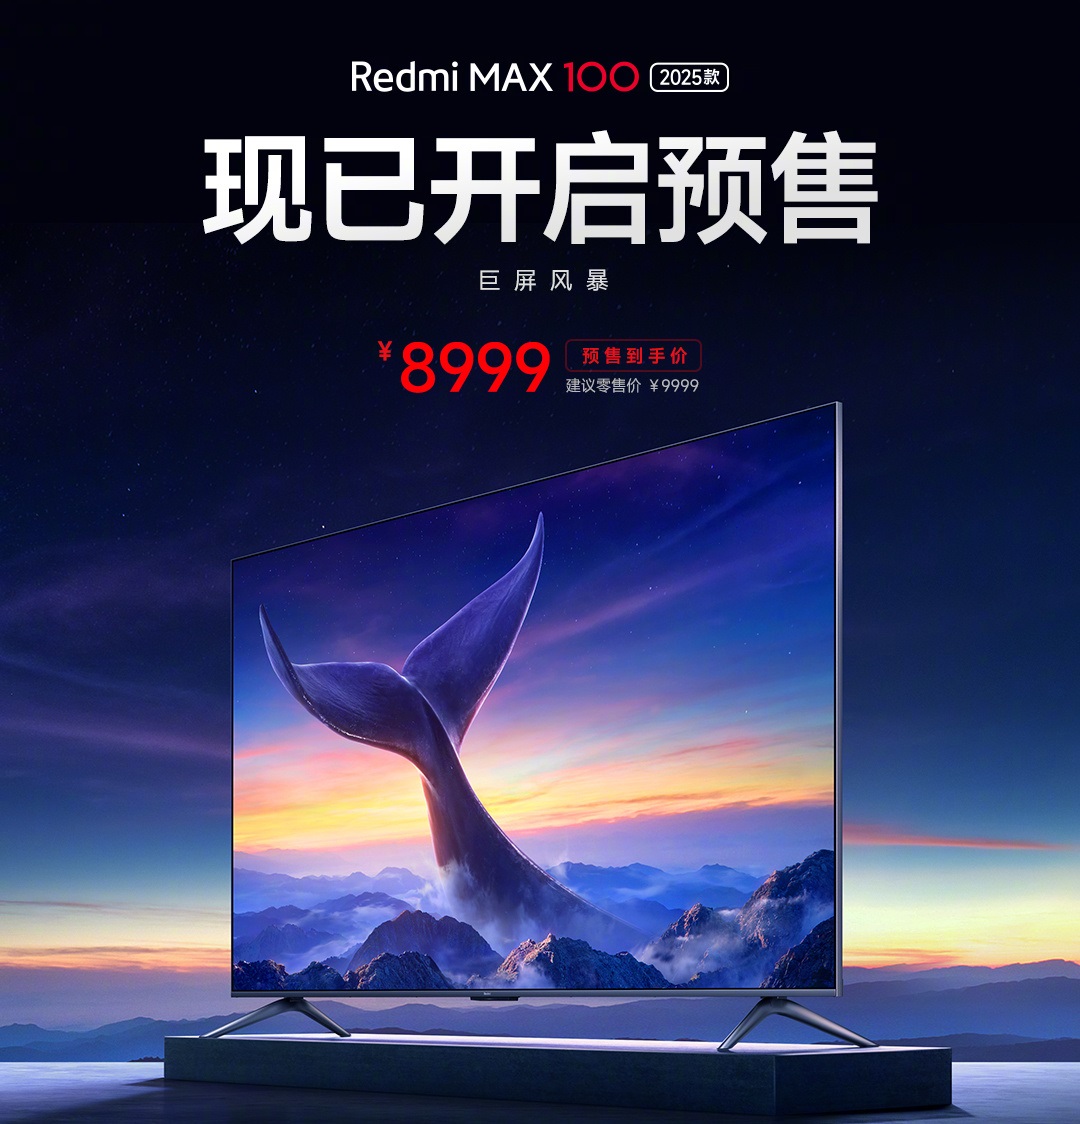 В Китае начались продажи телевизора Redmi MAX 100 2025 со 100-дюймовым экраном